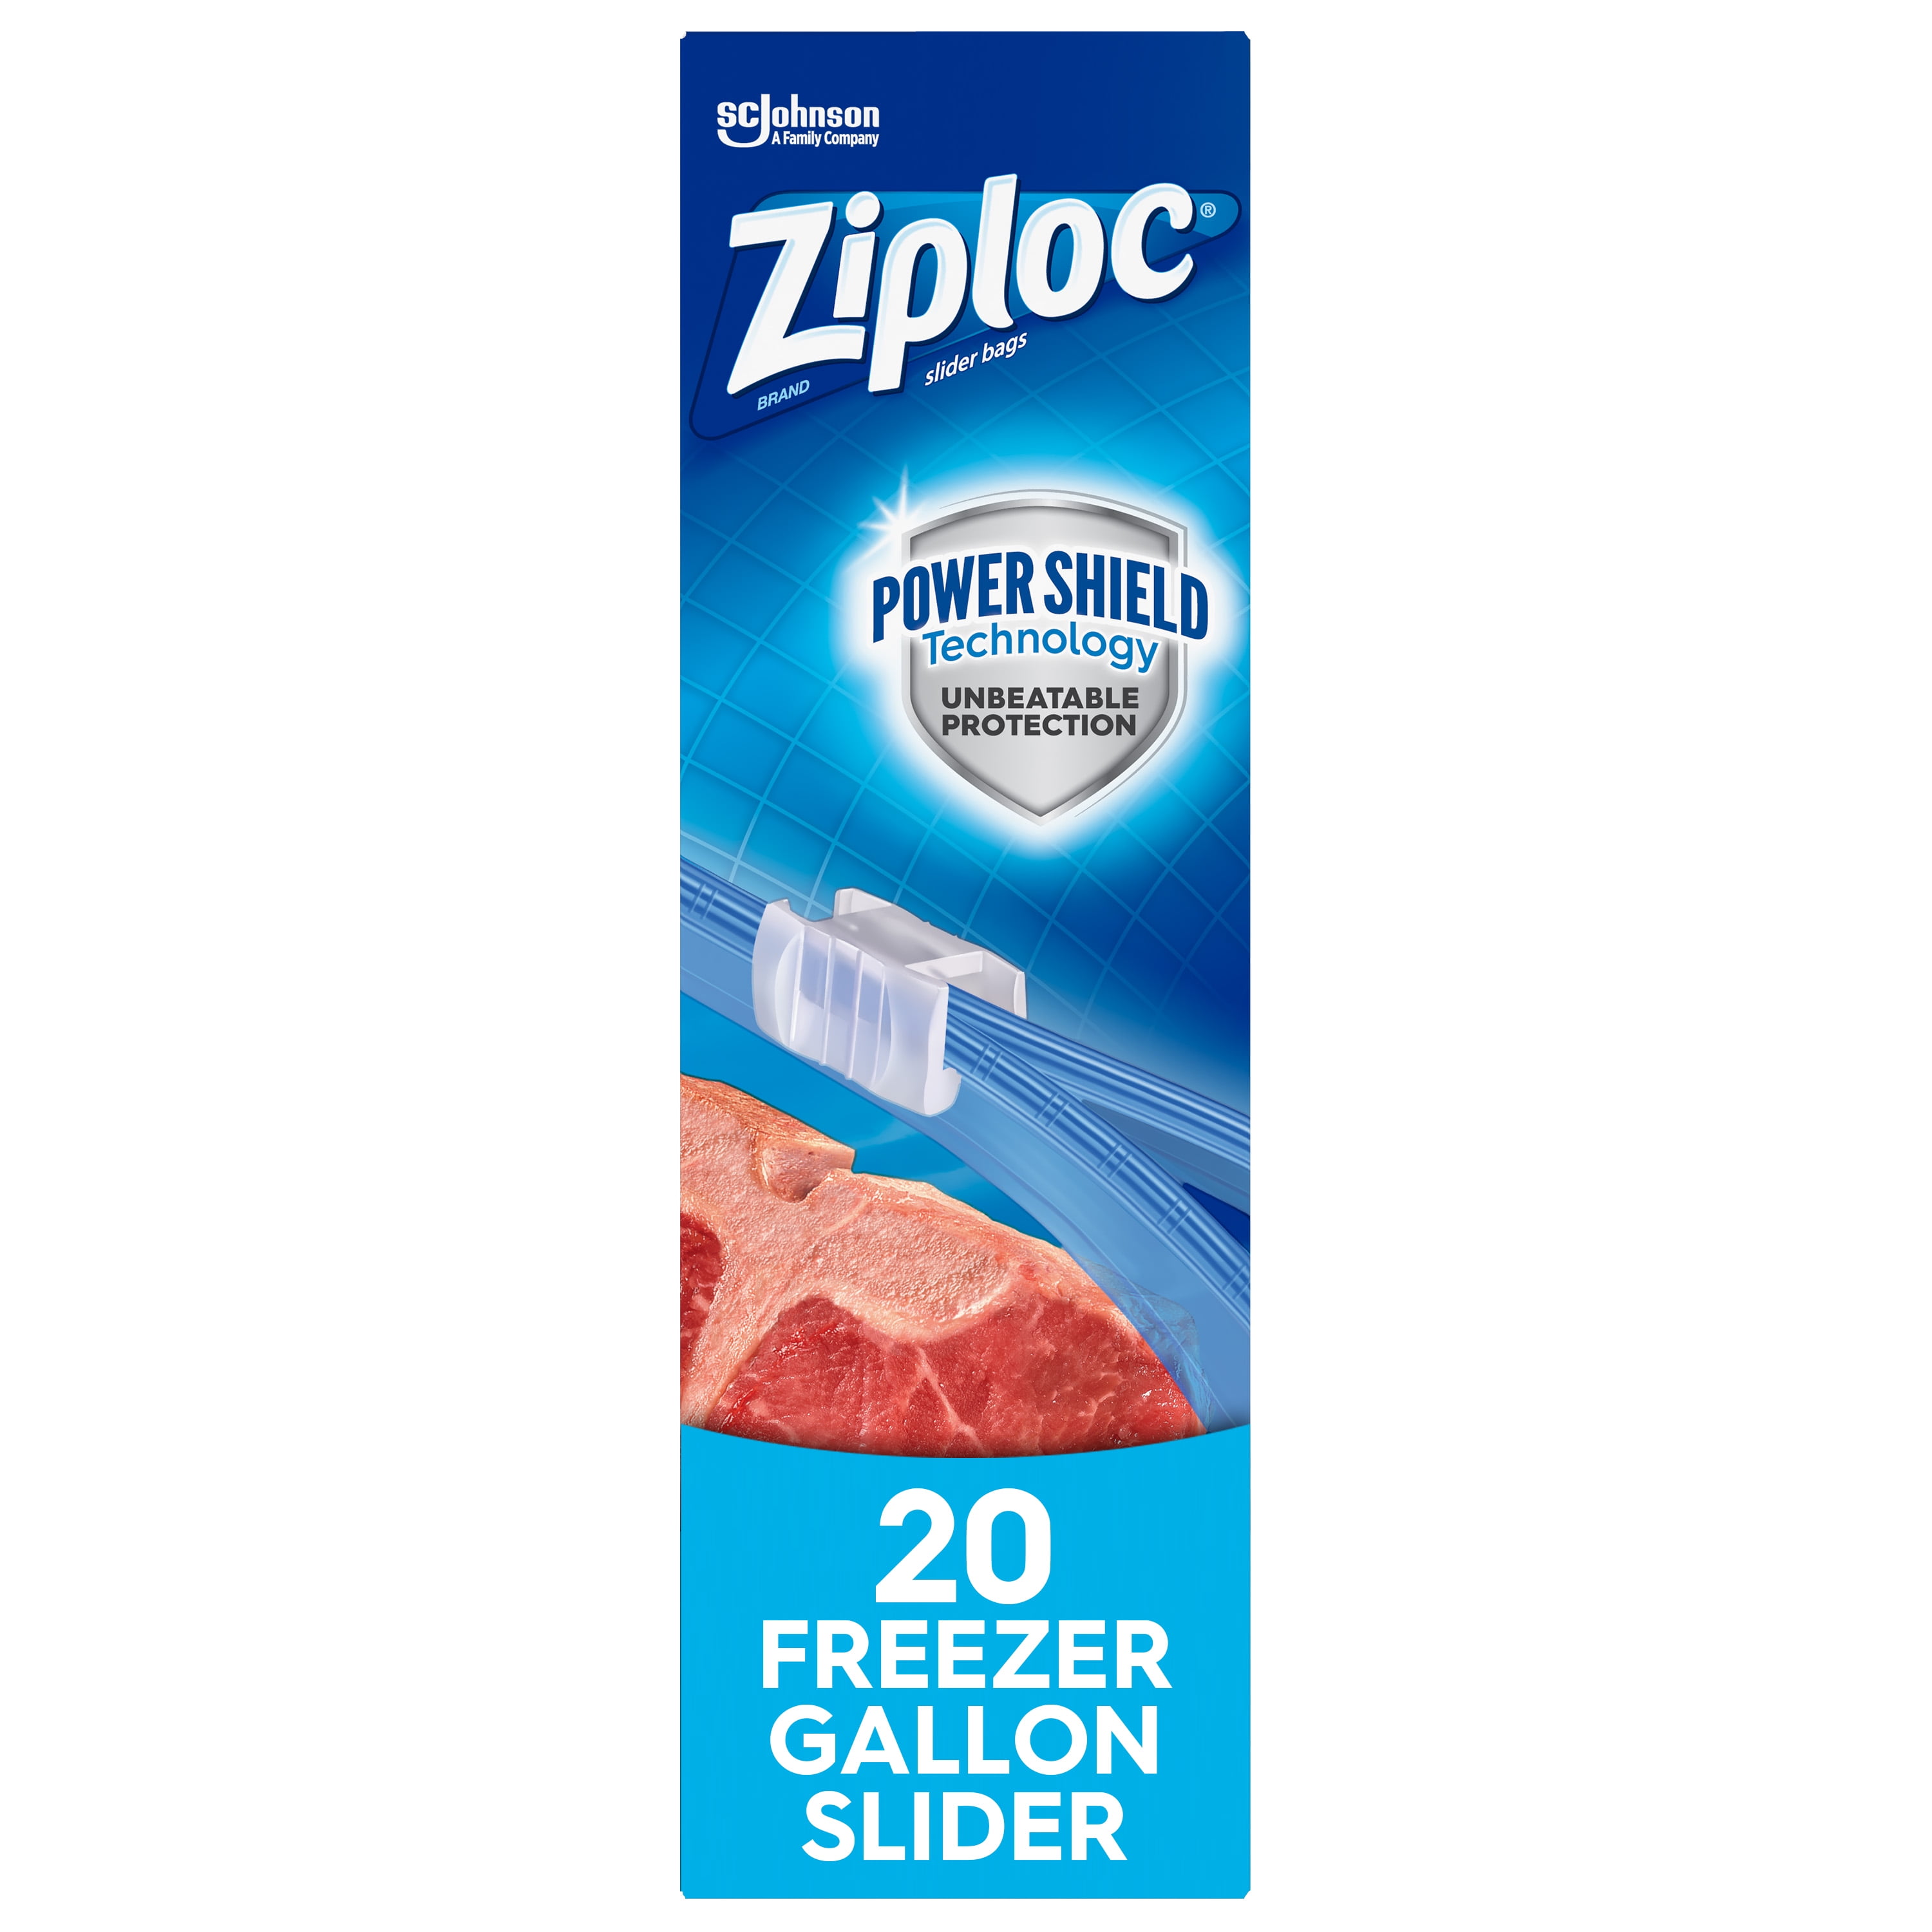 Ziploc®, Freezer Bags Extra Large, Ziploc® brand